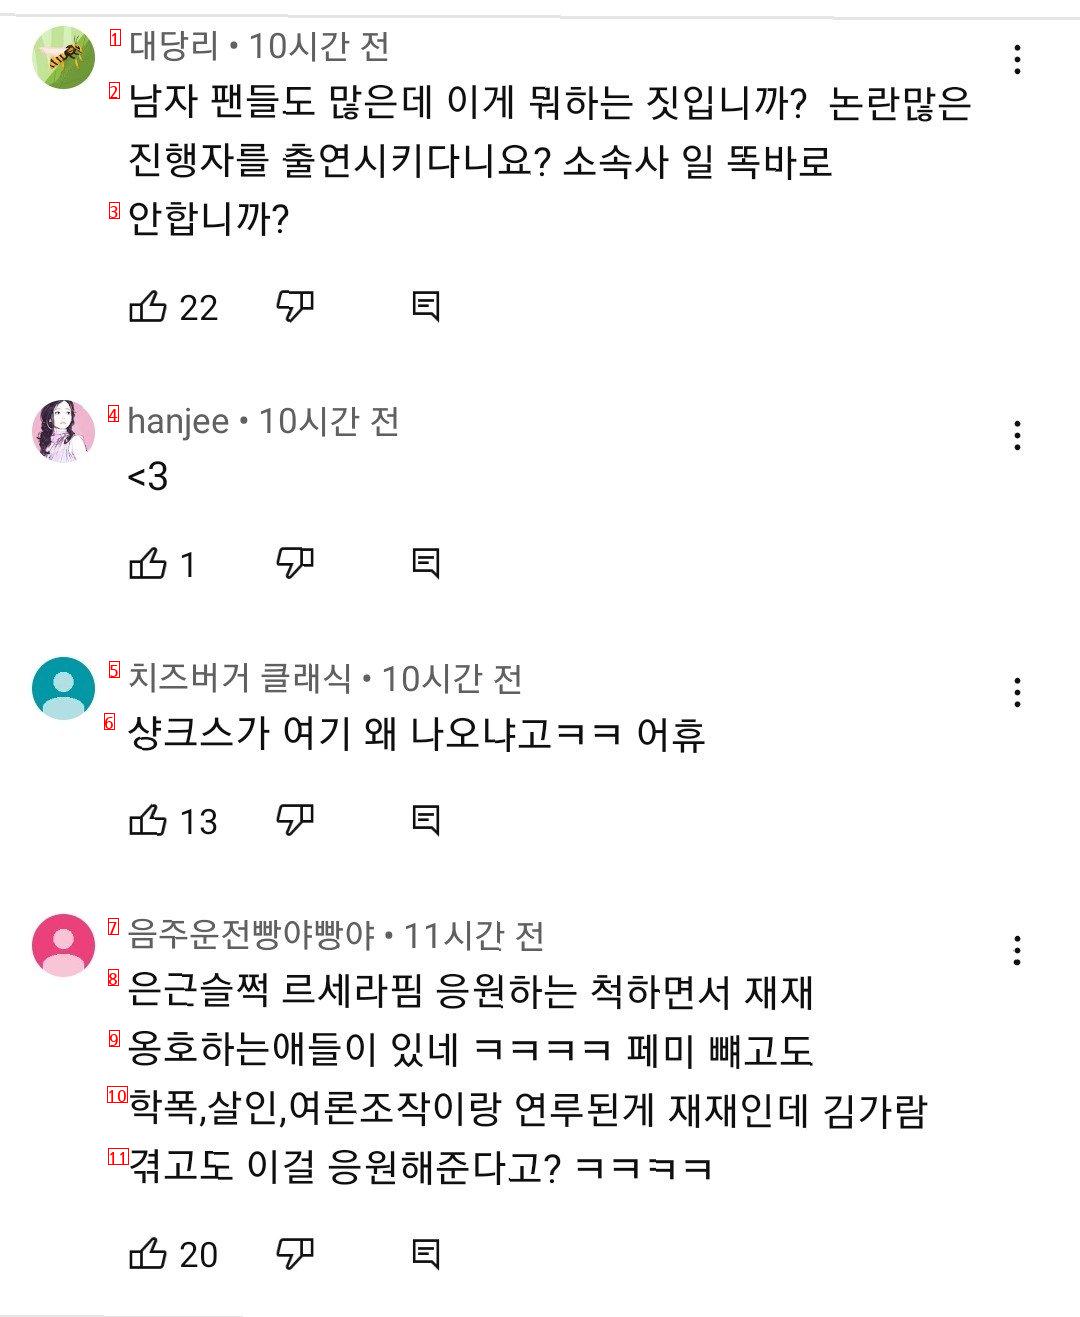 혐주의)컴백전 학폭과 엮인 걸그룹